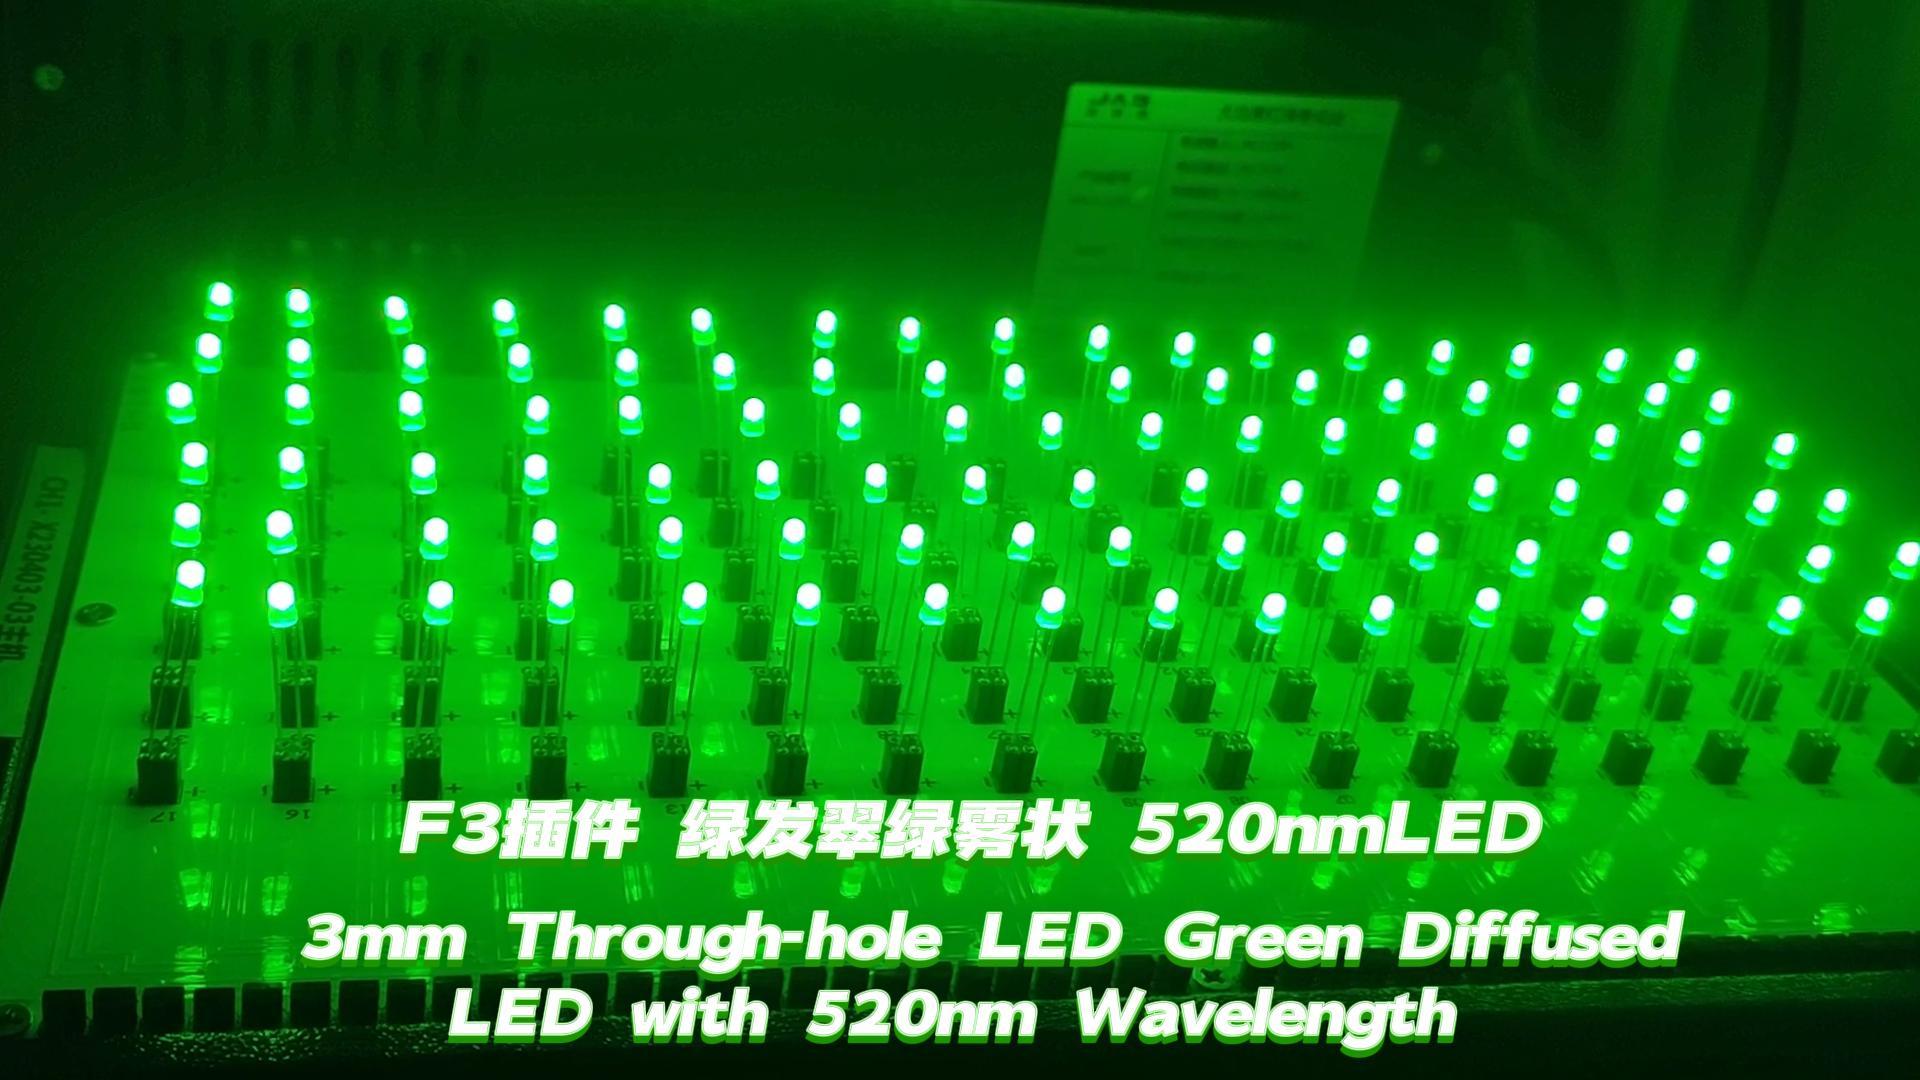 3mm through-hole LED Green na nagkakalat ng LED